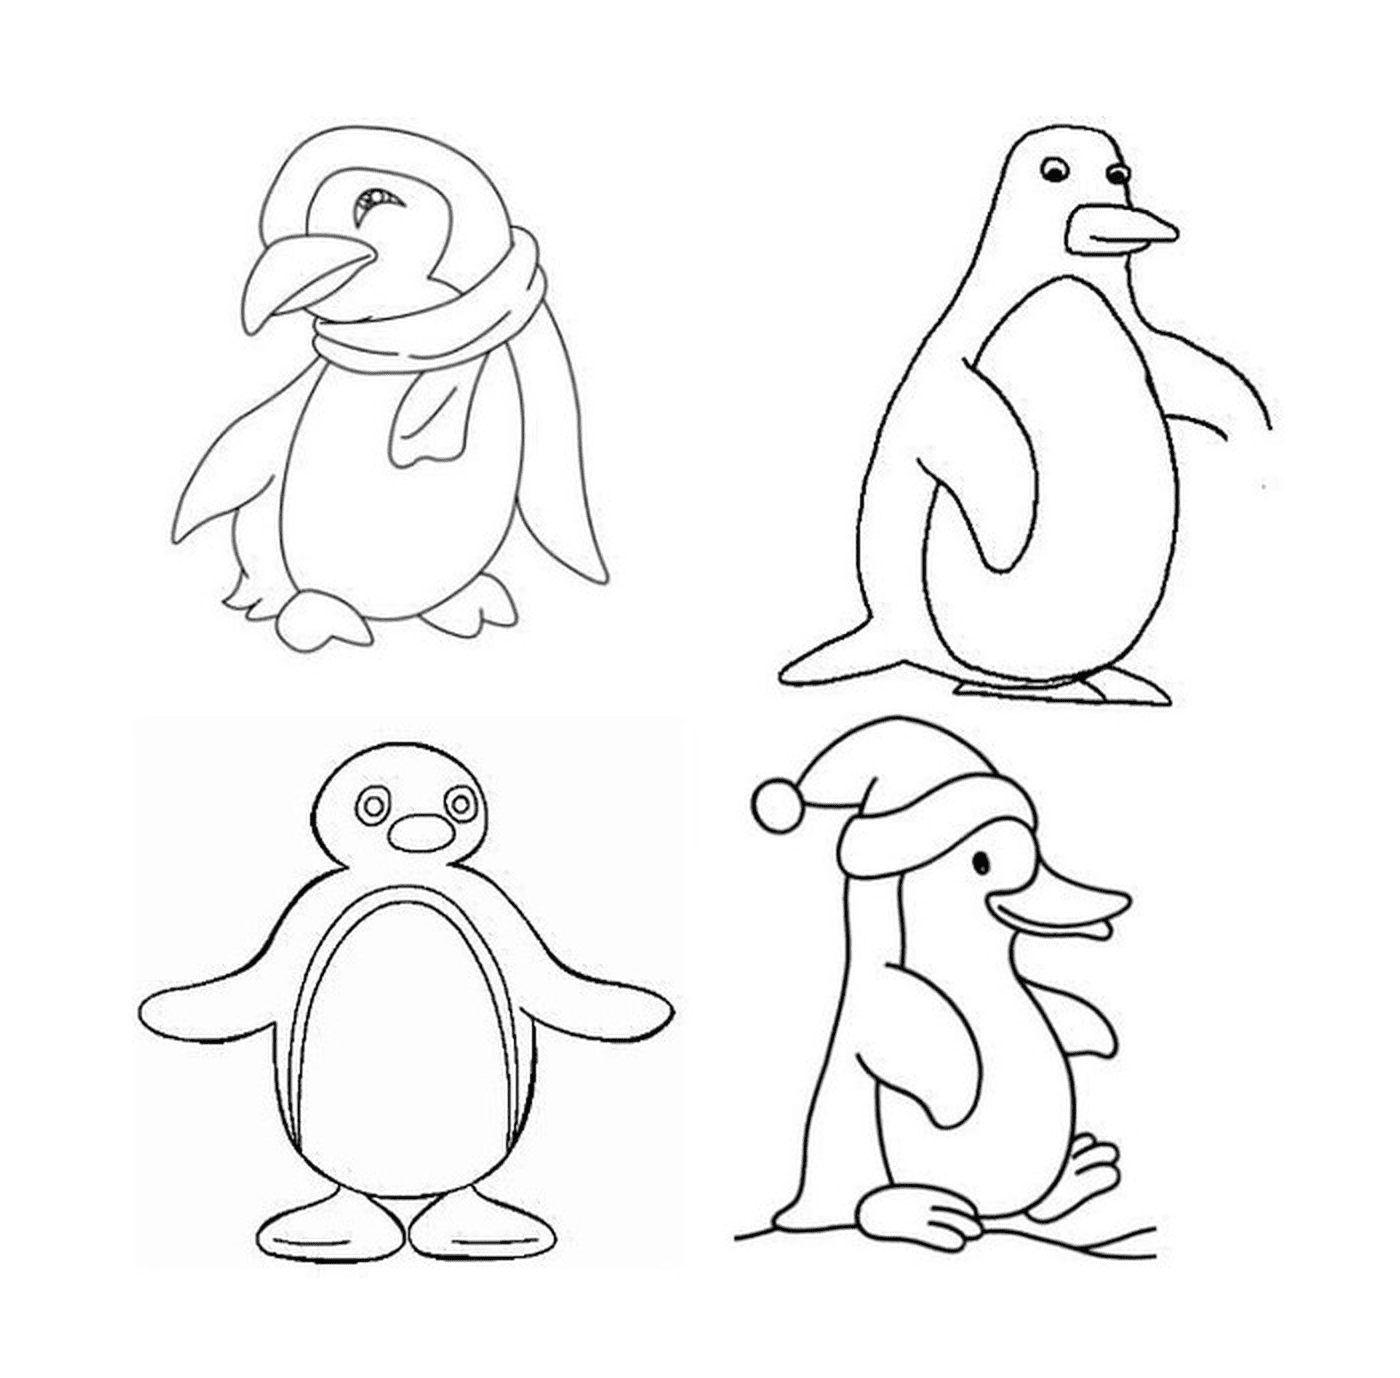  绘制中的四种不同的企鹅 